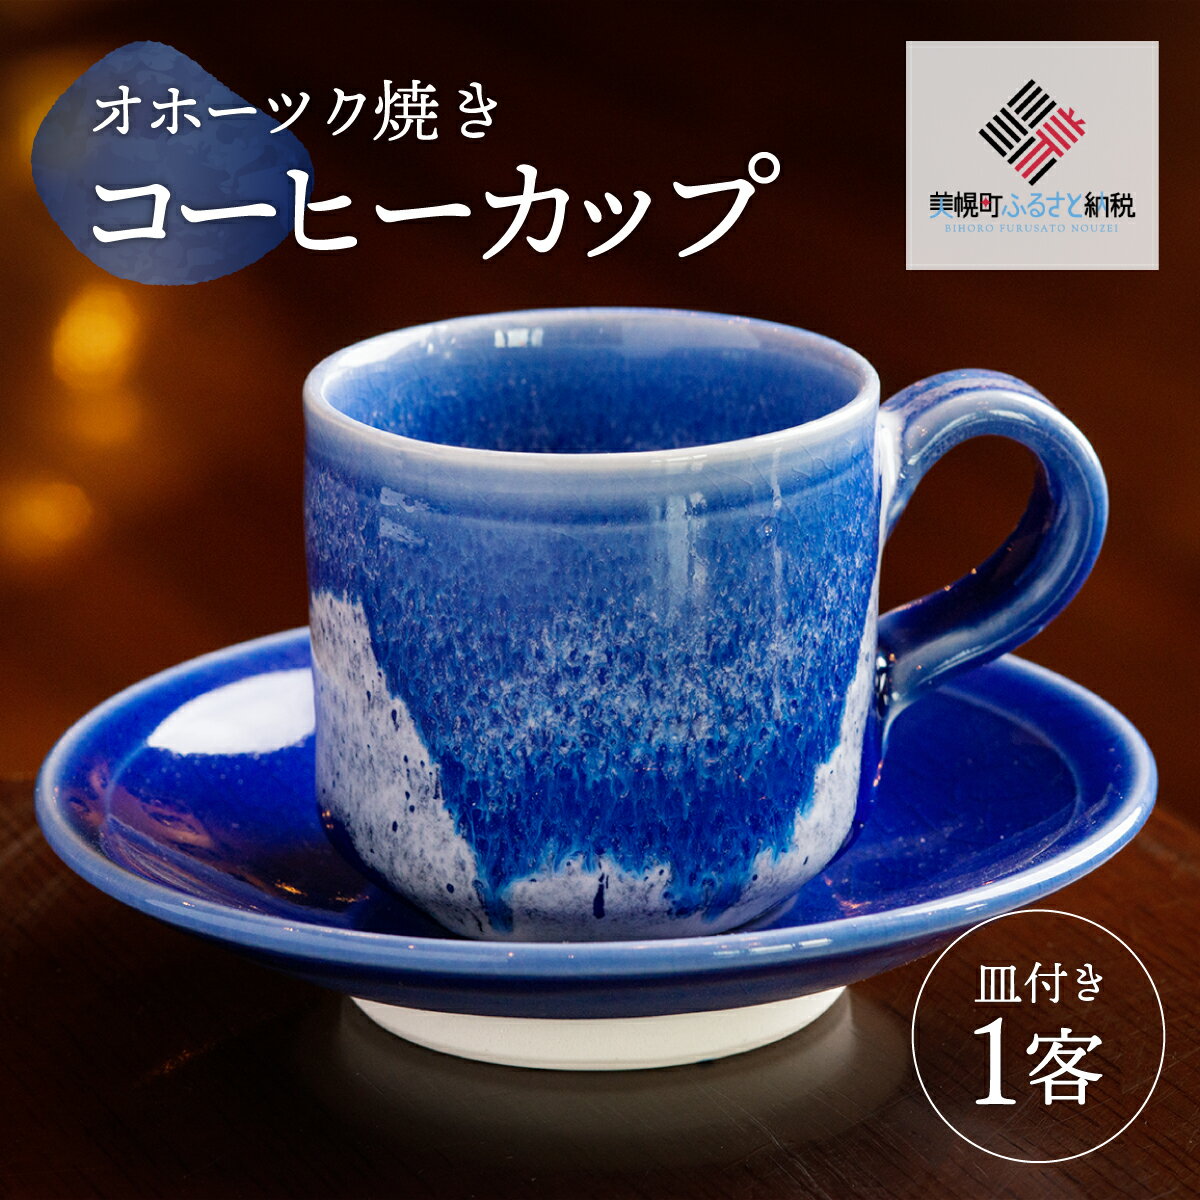 「オホーツク焼」のコーヒーカップ コーヒーカップ カップ コップ オホーツク焼 土産 北海道 美幌町 送料無料